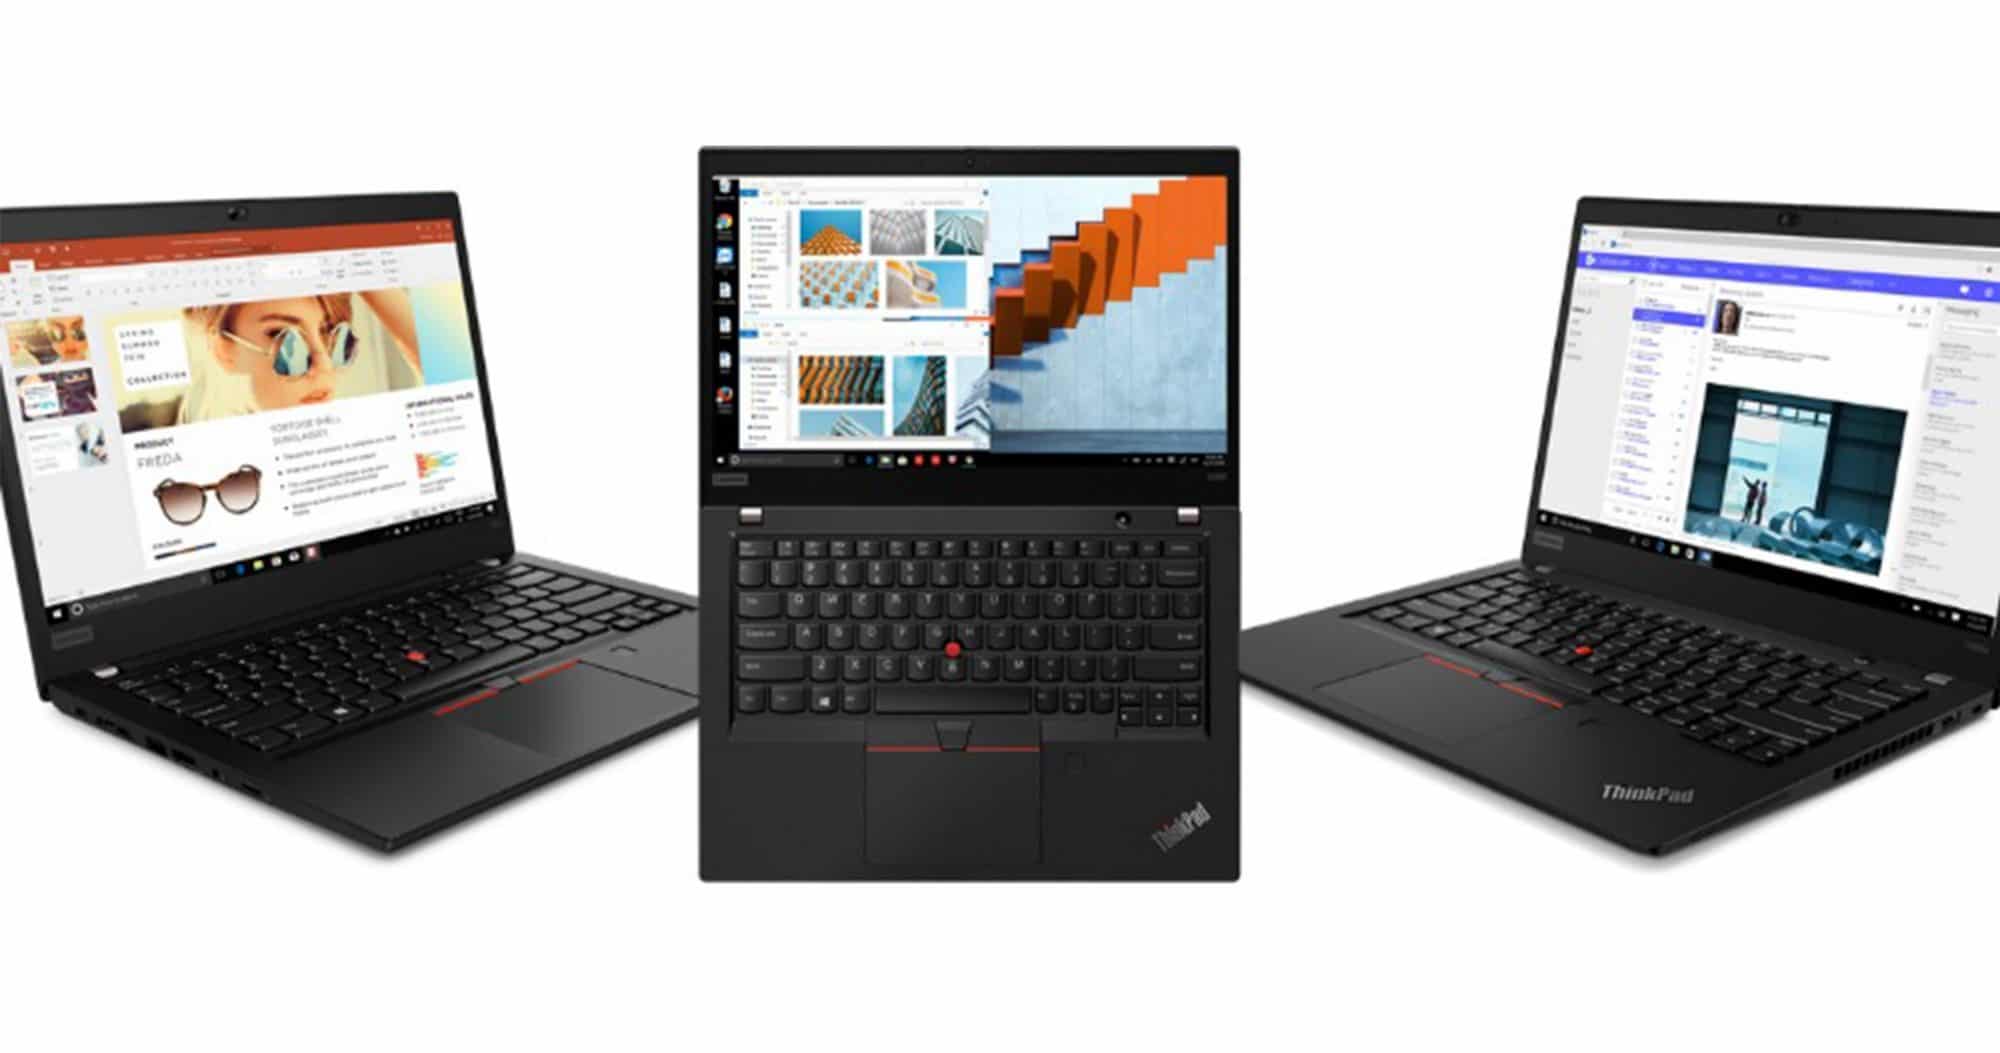 เปิดตัว Lenovo ThinkPad รุ่นล่าสุด ใช้ AMD Ryzen PRO 1